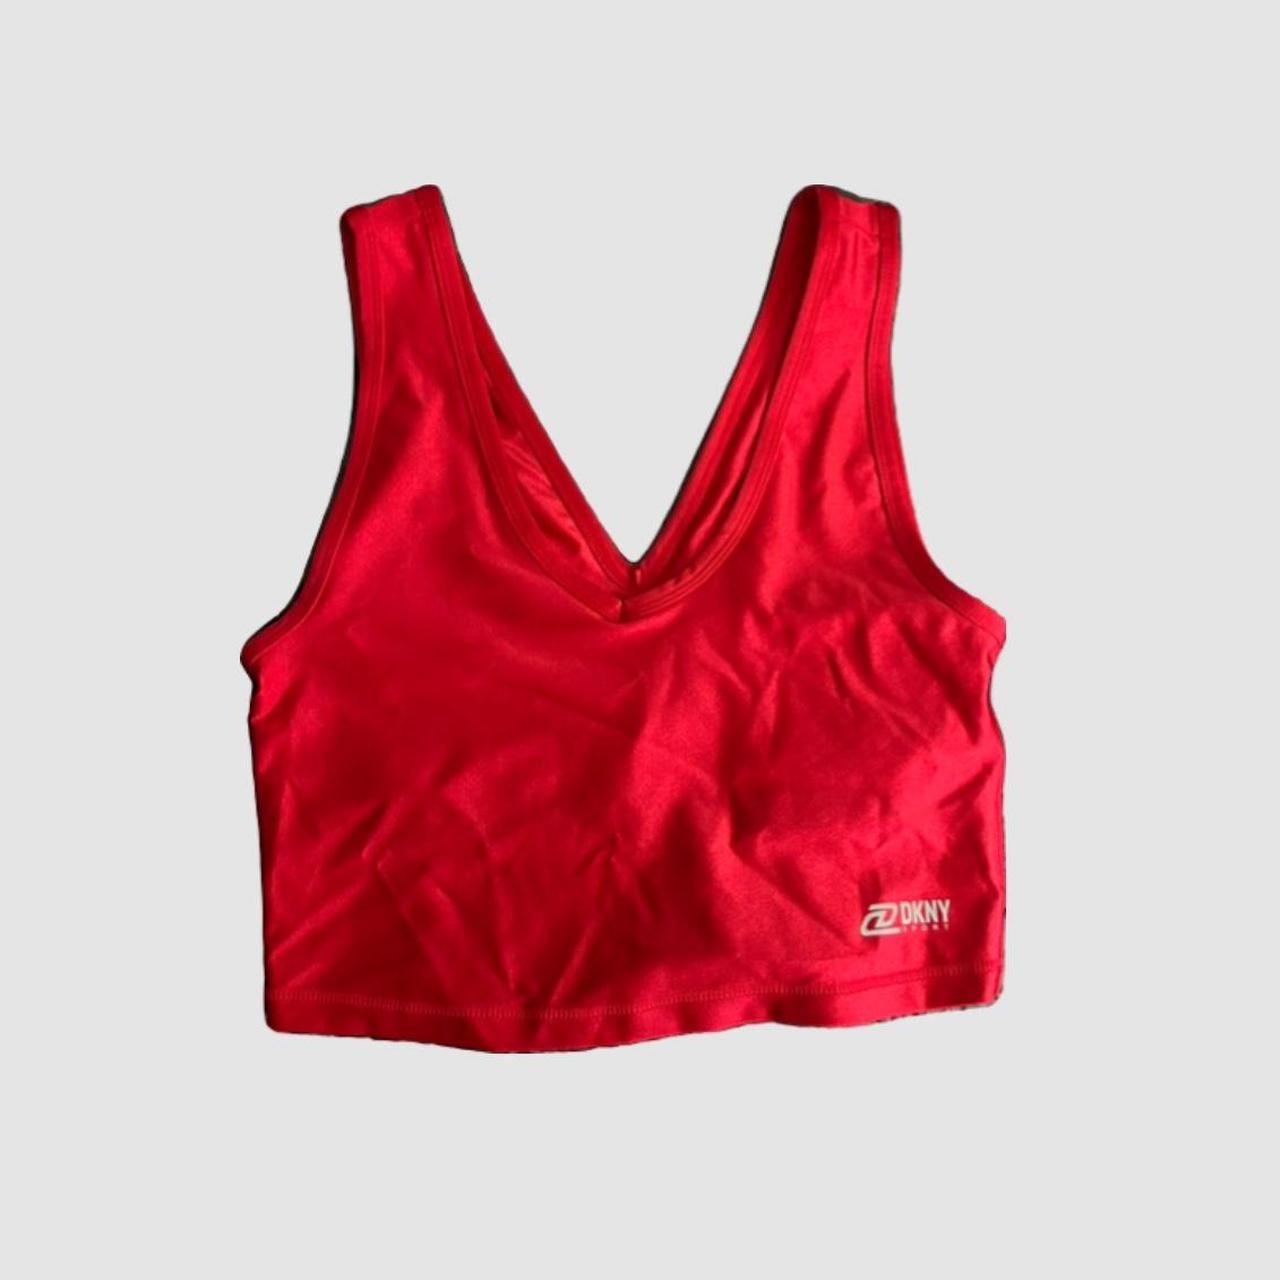 DKNY Sports Bra Size Medium Yoga Athletic Activewear - Depop